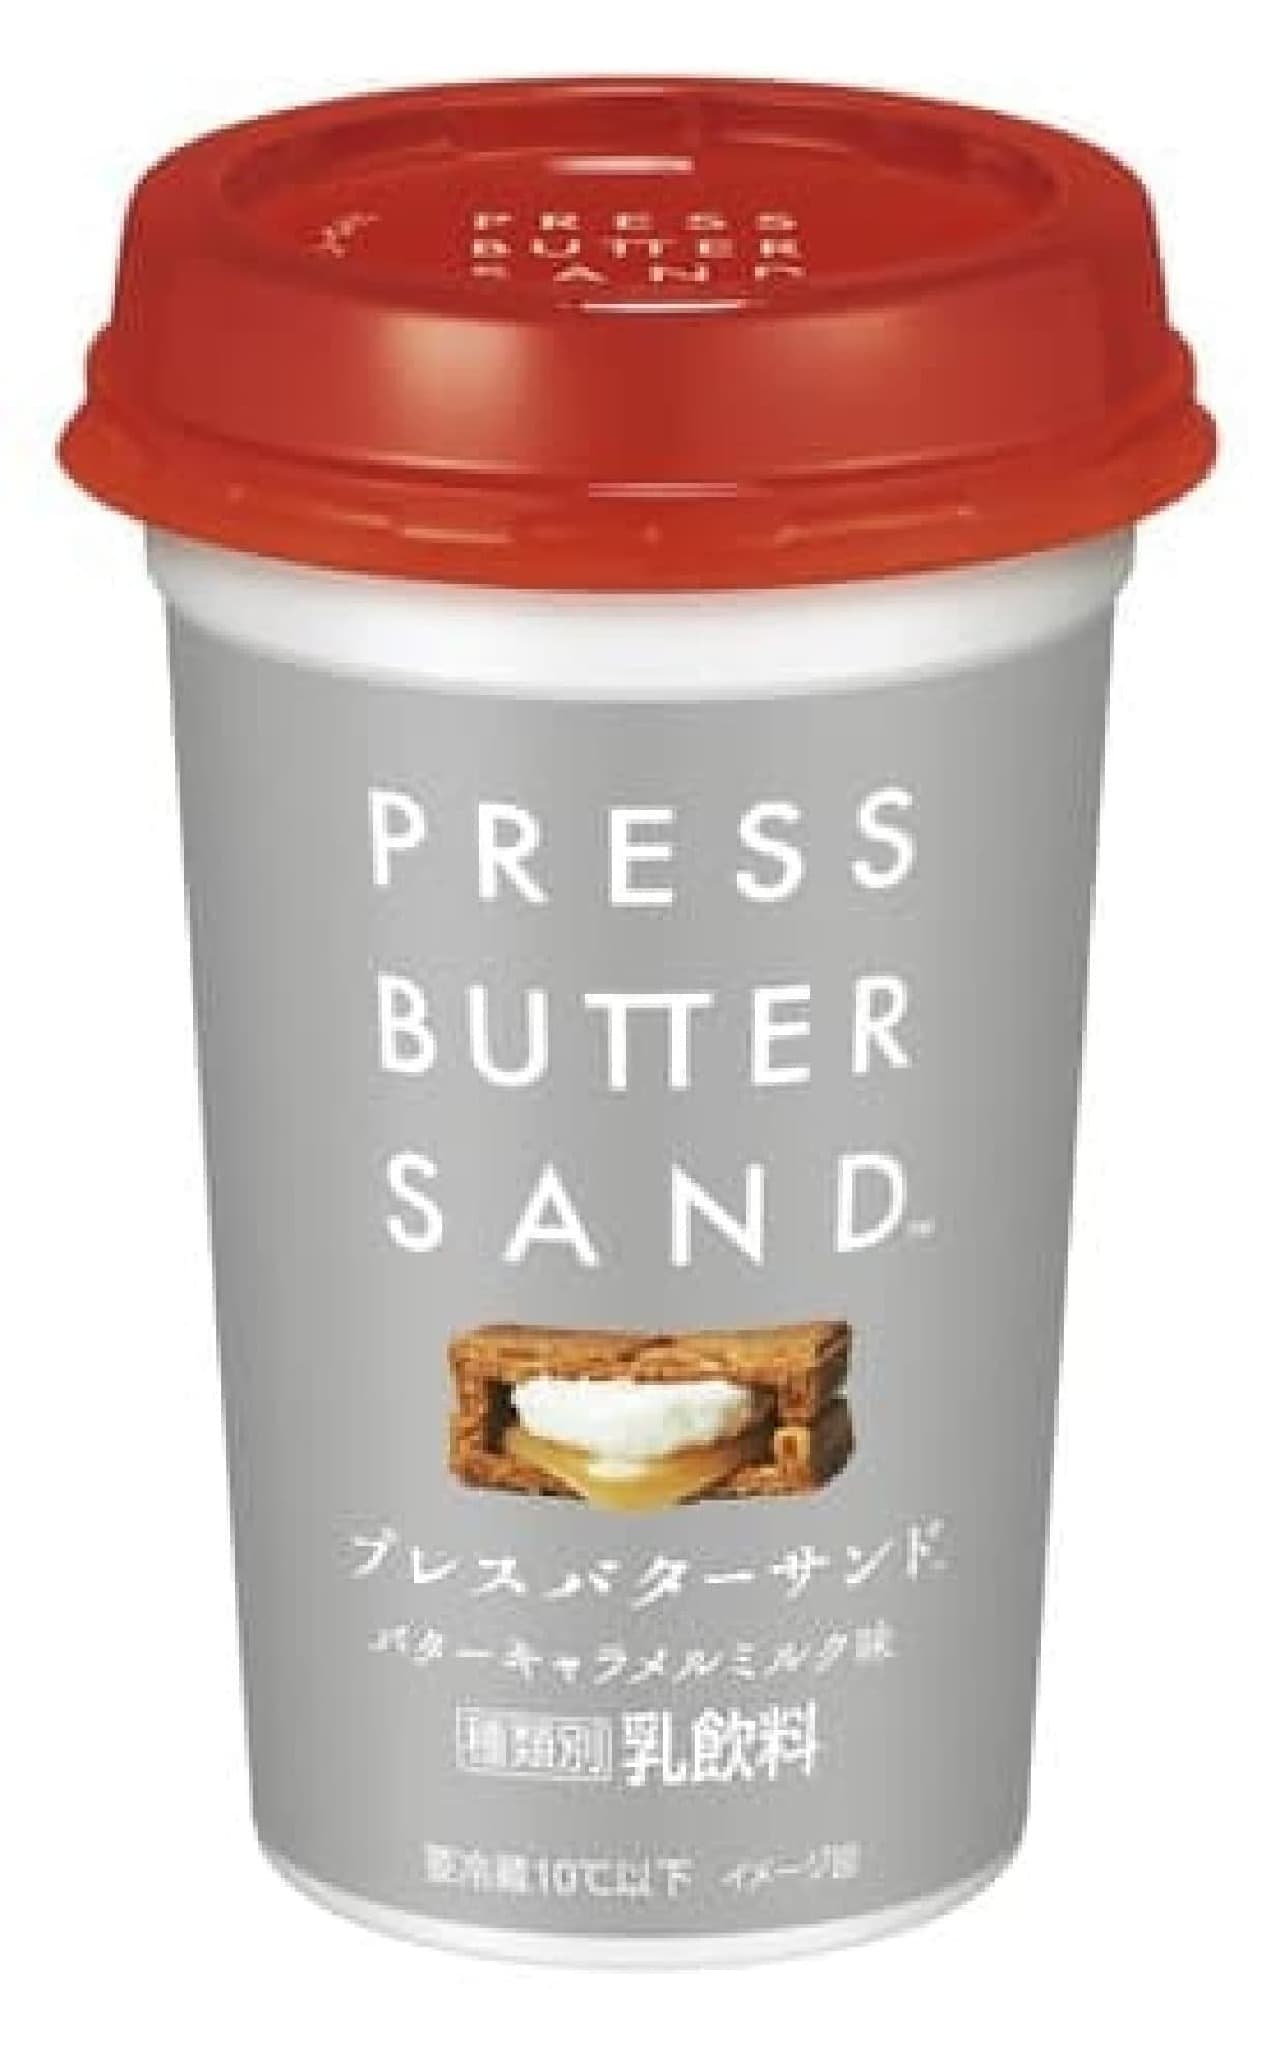 PRESS BUTTER SAND バターキャラメルミルク味